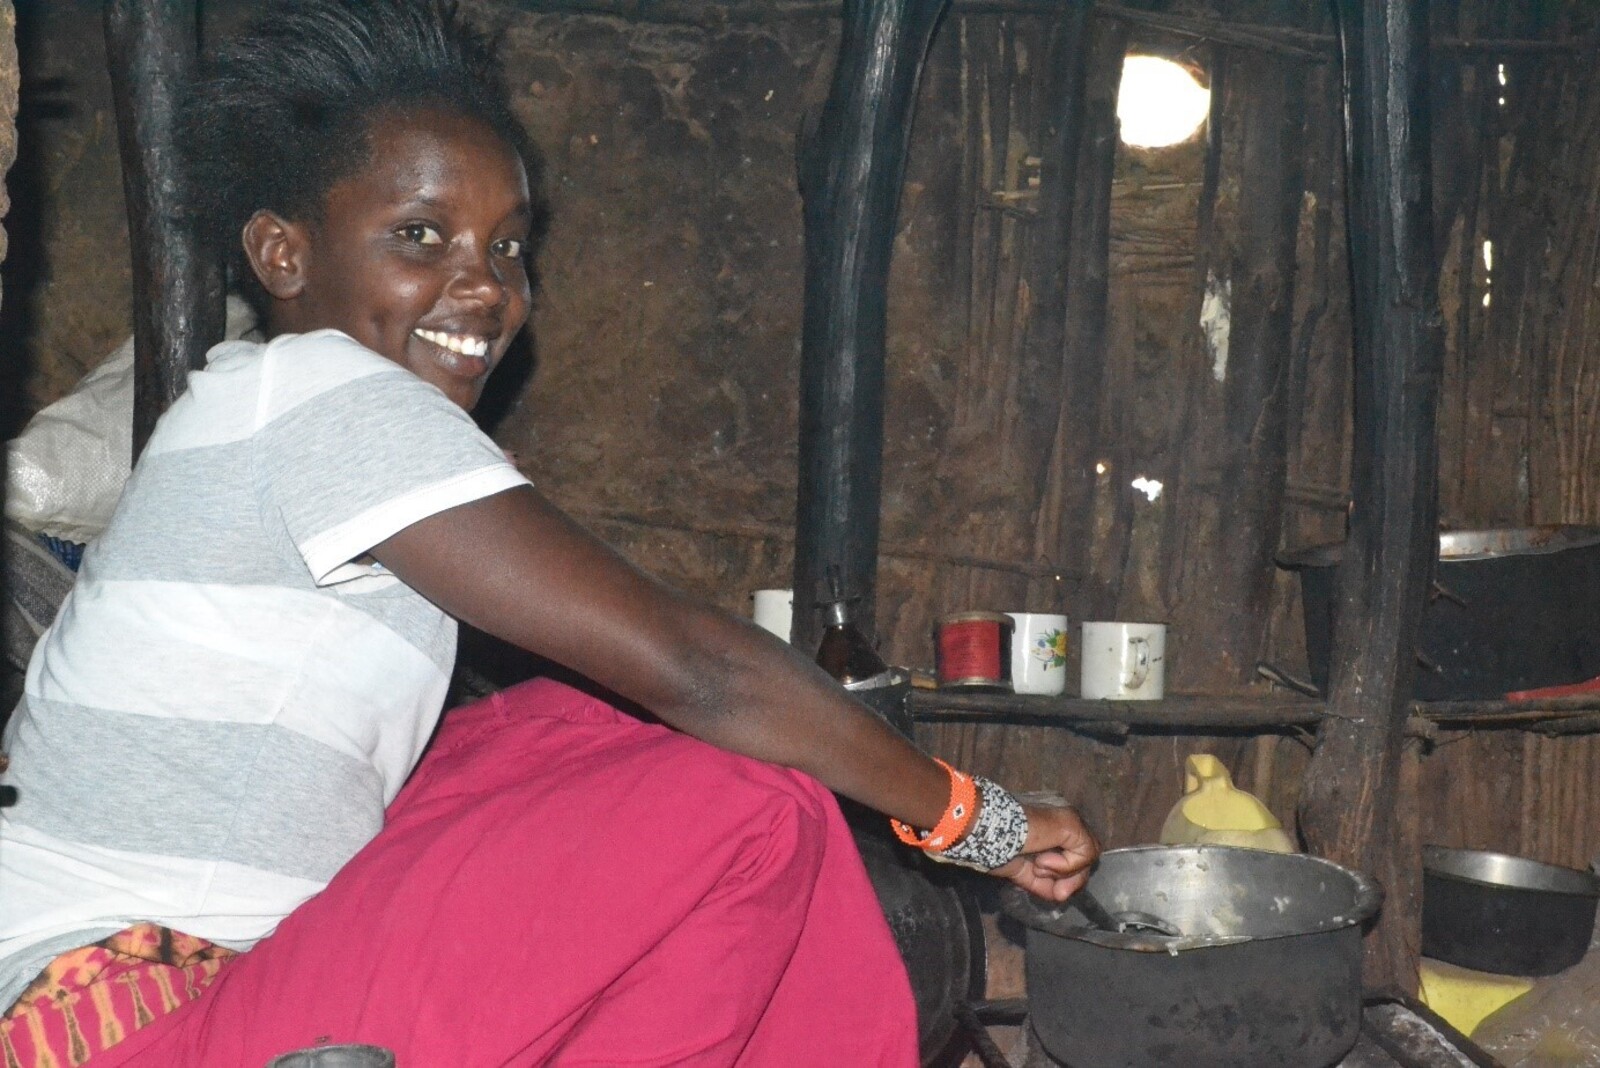 Janet aus Kenia flüchtete aus Angst vor einer Zwangsehe